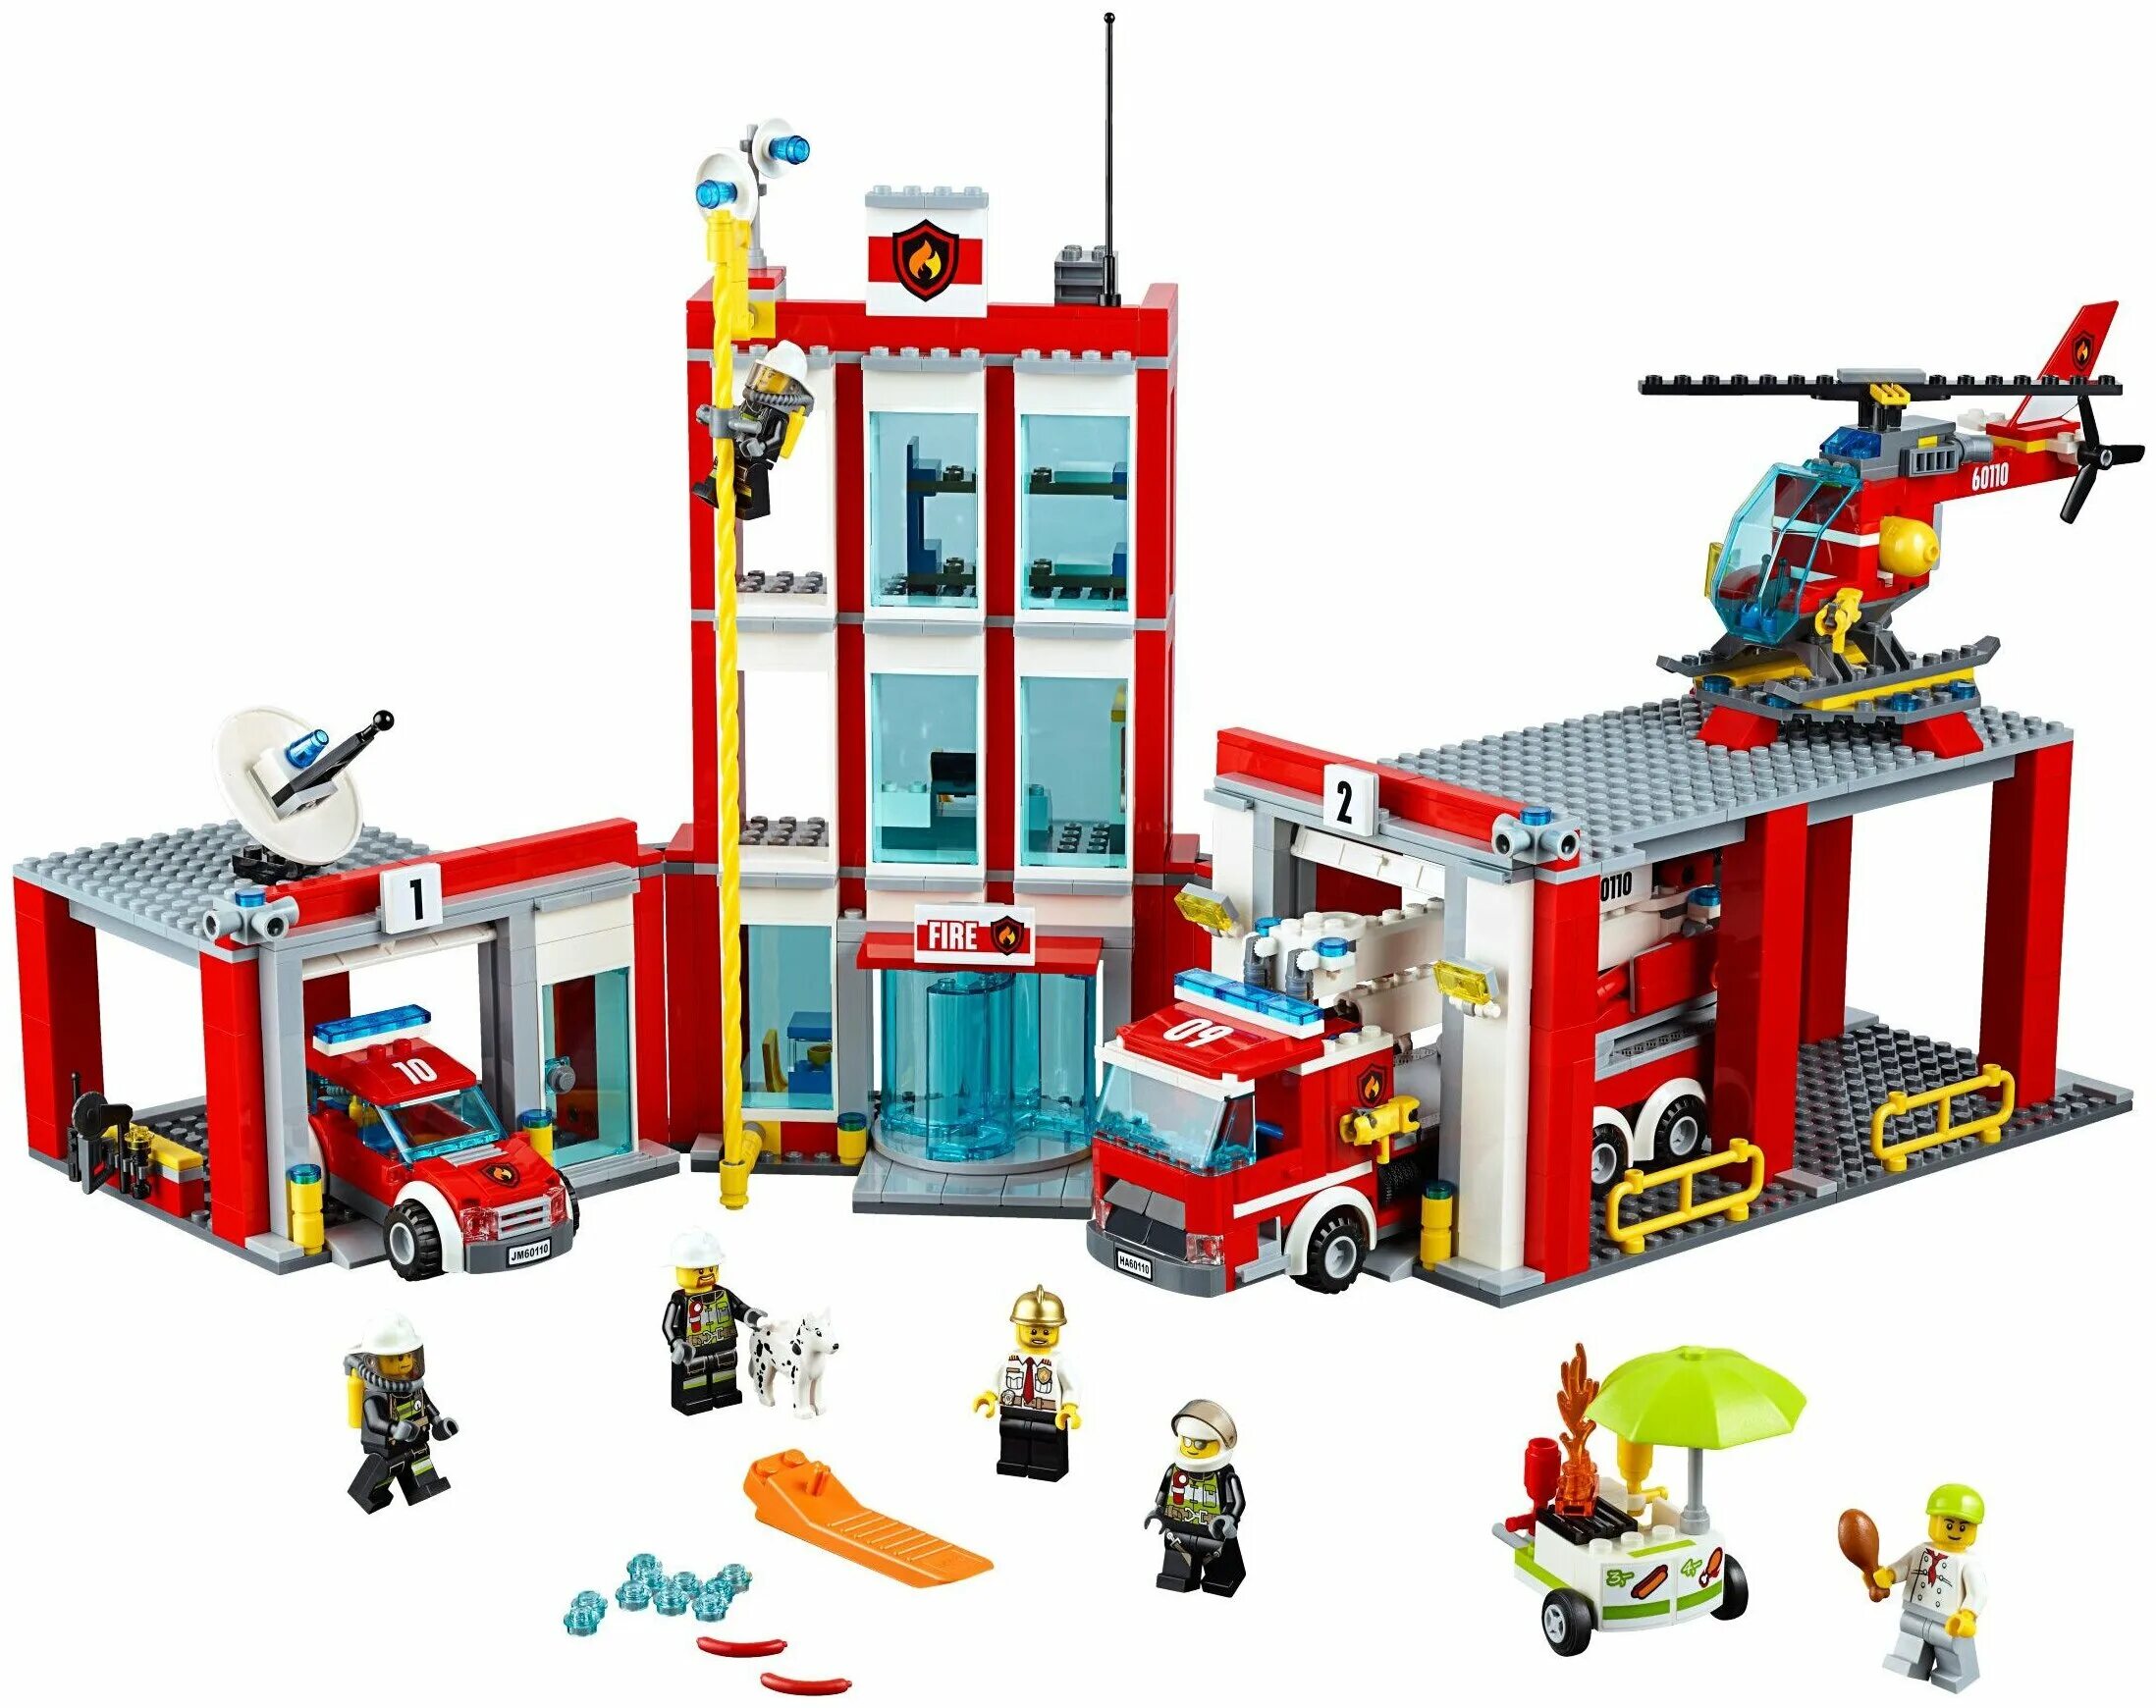 Сити пожарная. LEGO City 60110. Лего Сити пожарная станция 60110. Лего Сити 60110. LEGO City пожарная станция 60110.